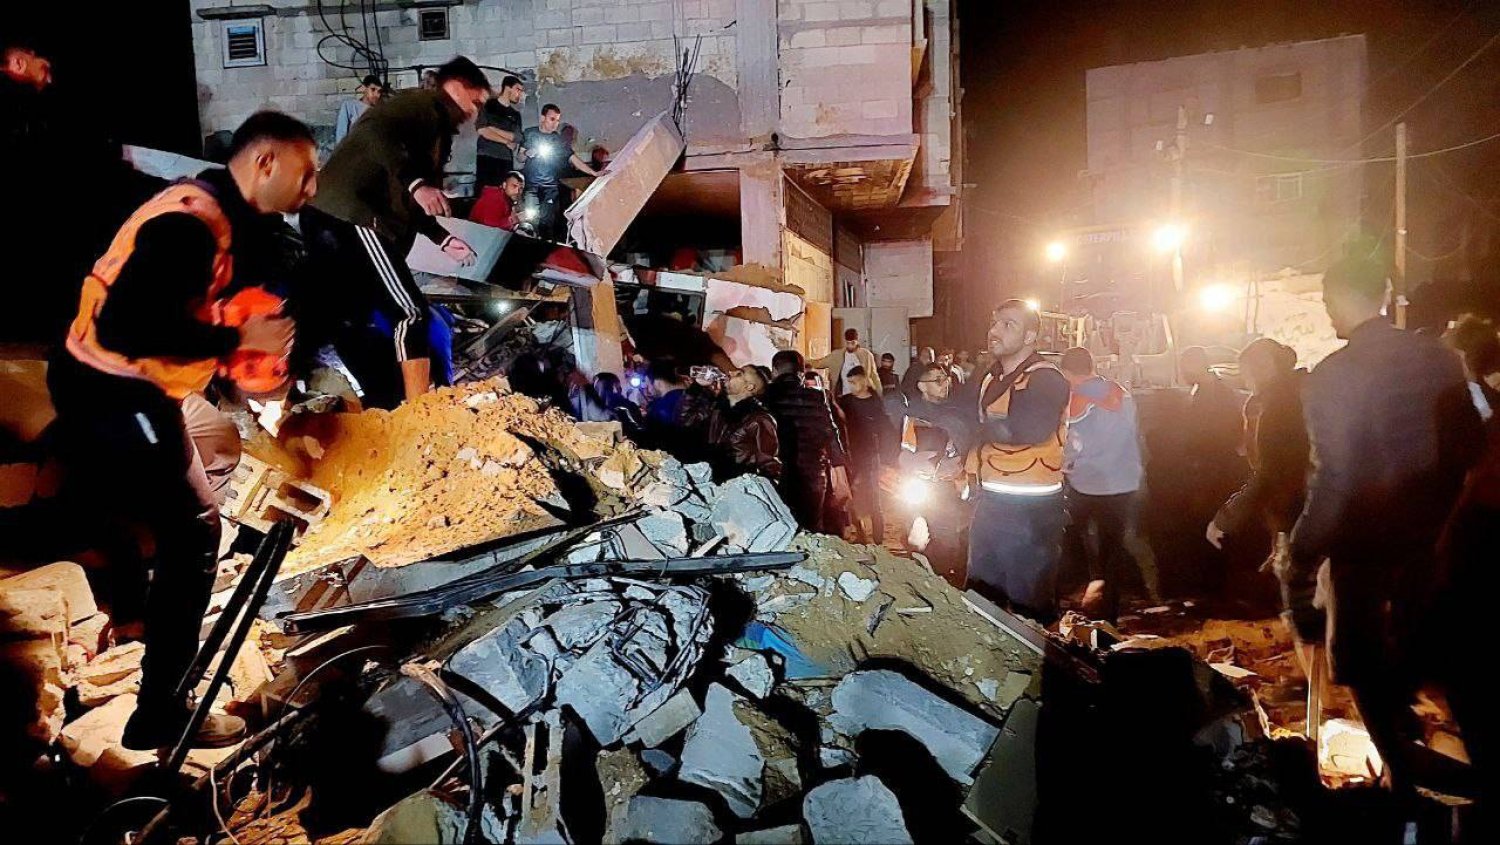 عناصر الدفاع المدني الفلسطيني يبحثون عن ضحايا أسفل مبنى قصفته إسرائيل في غزة (الداخلية الفلسطينية عبر تلغرام)